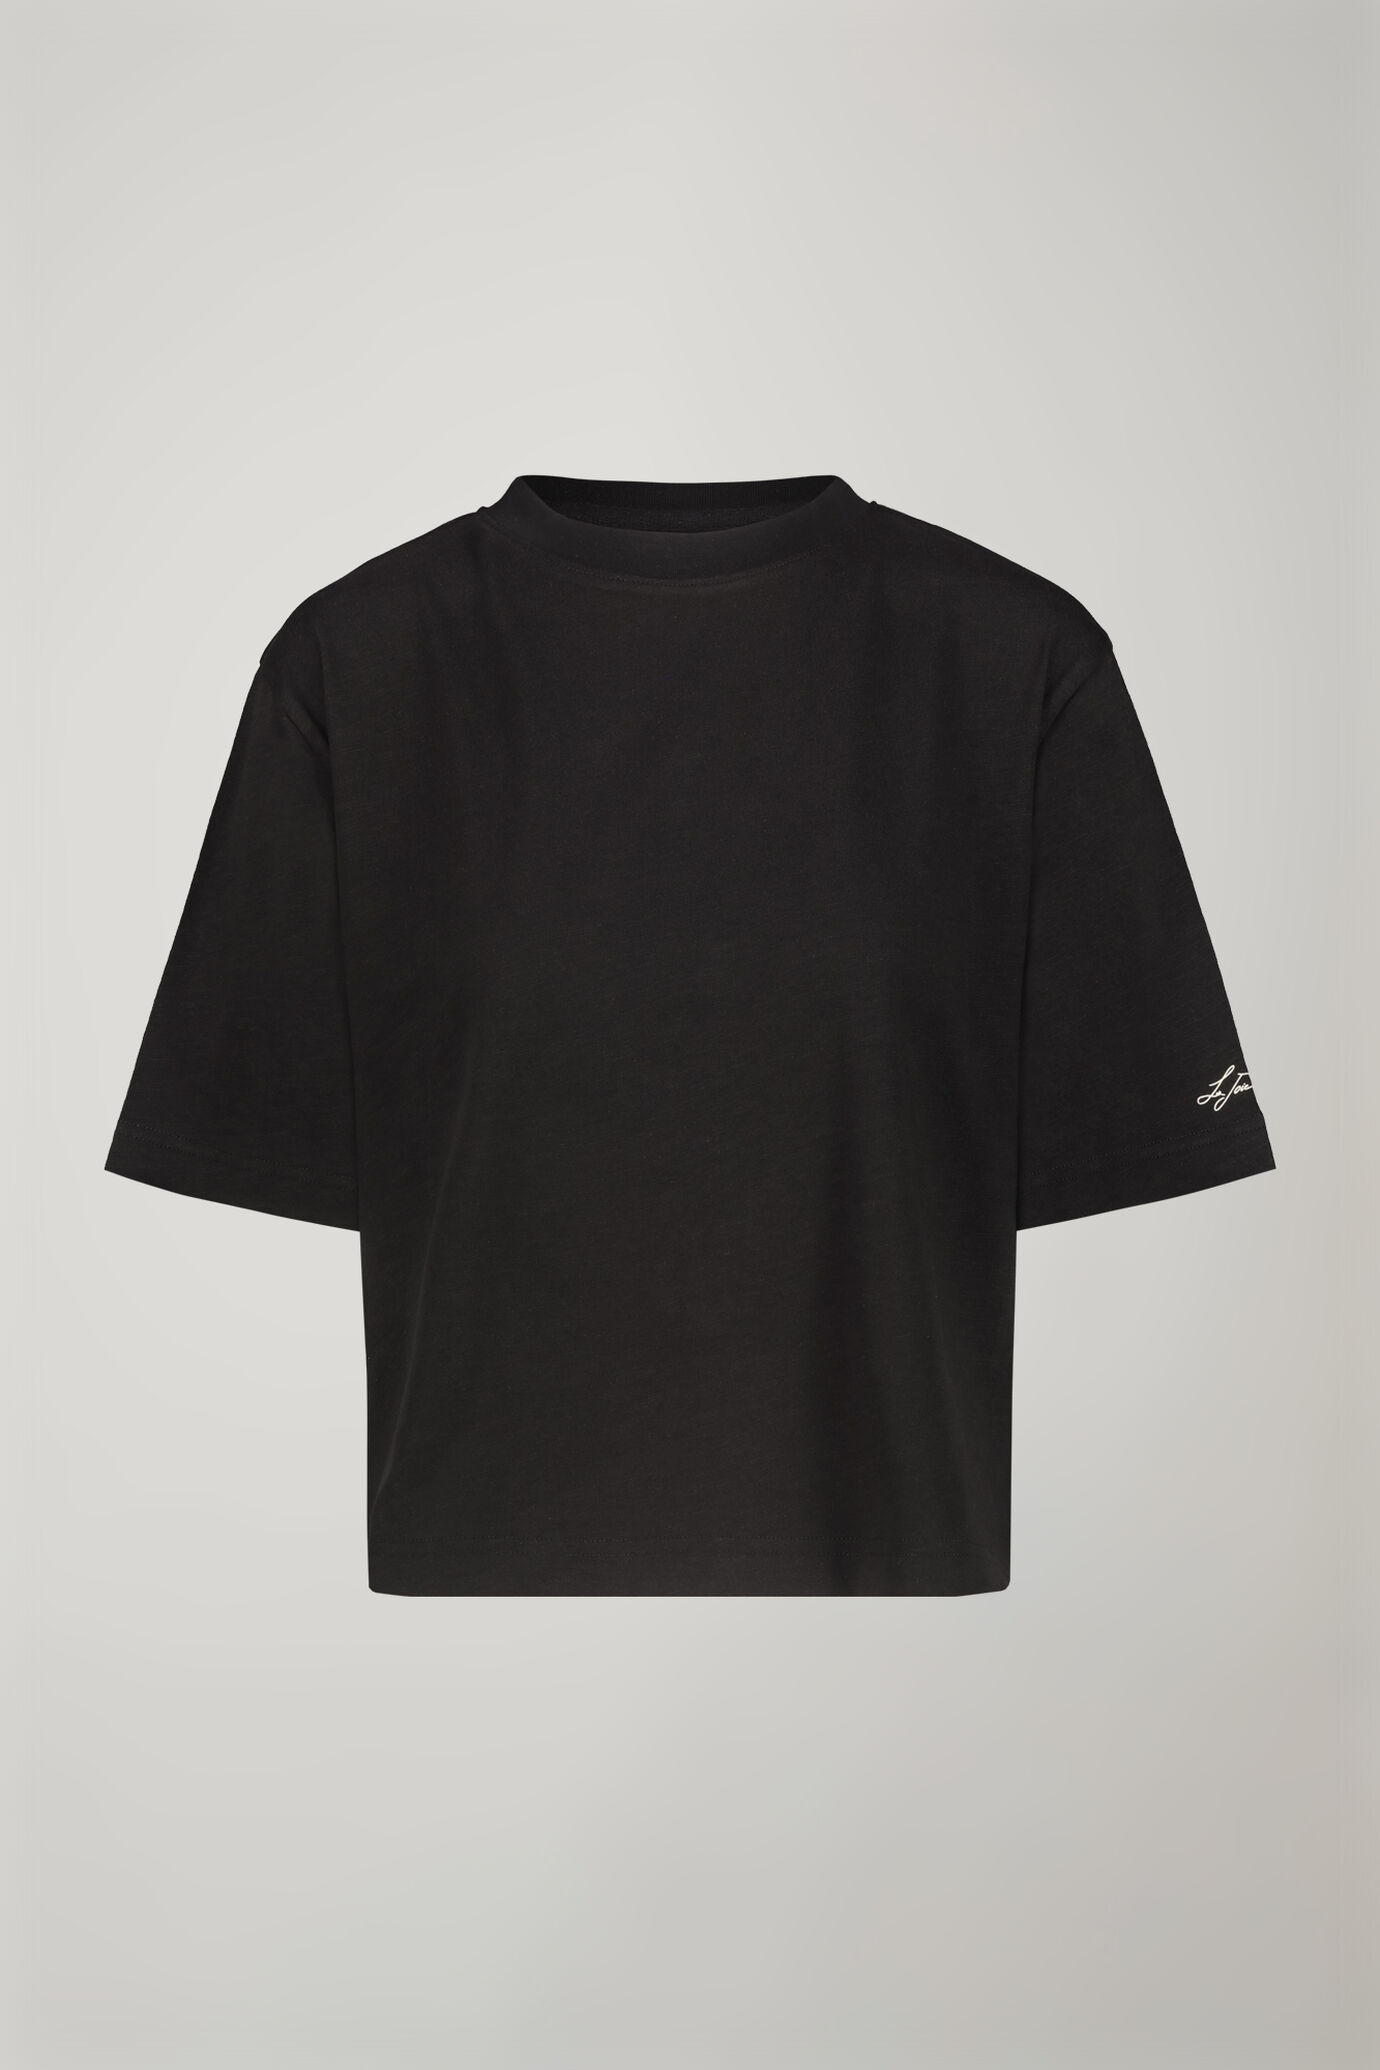 Damen-T-Shirt mit Rundhalsausschnitt aus 100 % Baumwolle in normaler Passform image number 5